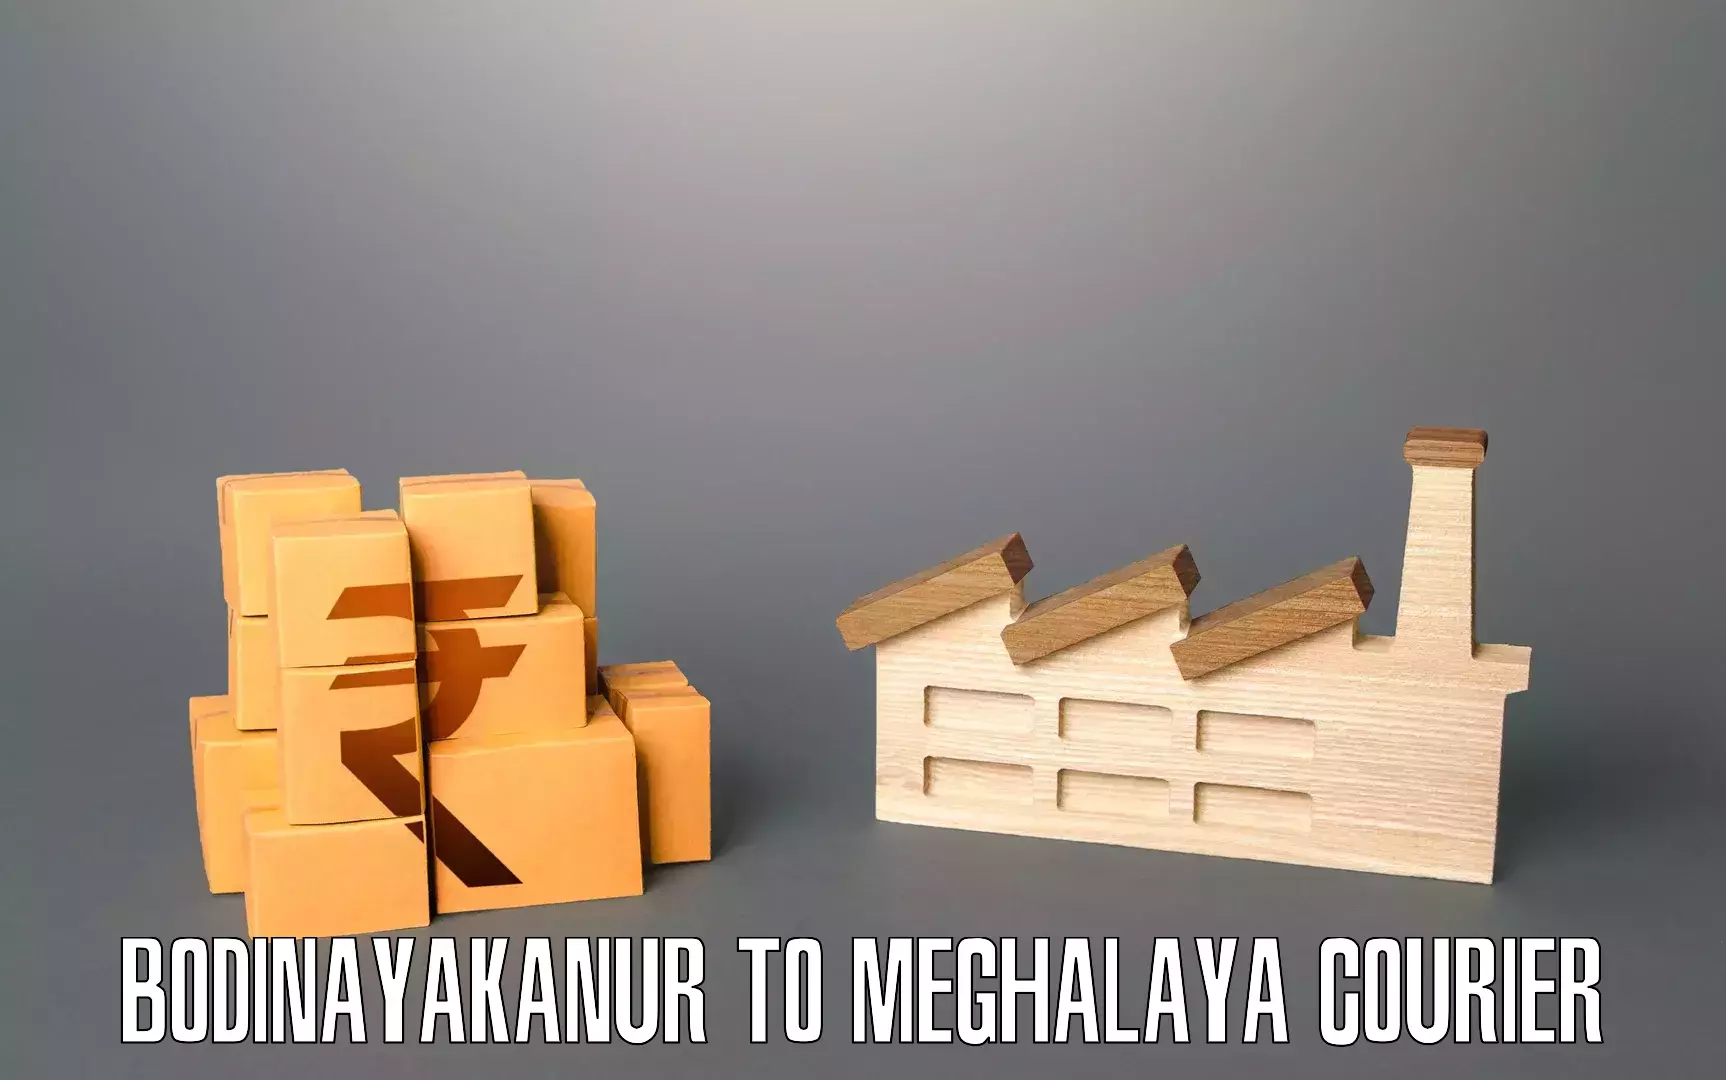 Personalized moving service Bodinayakanur to Meghalaya